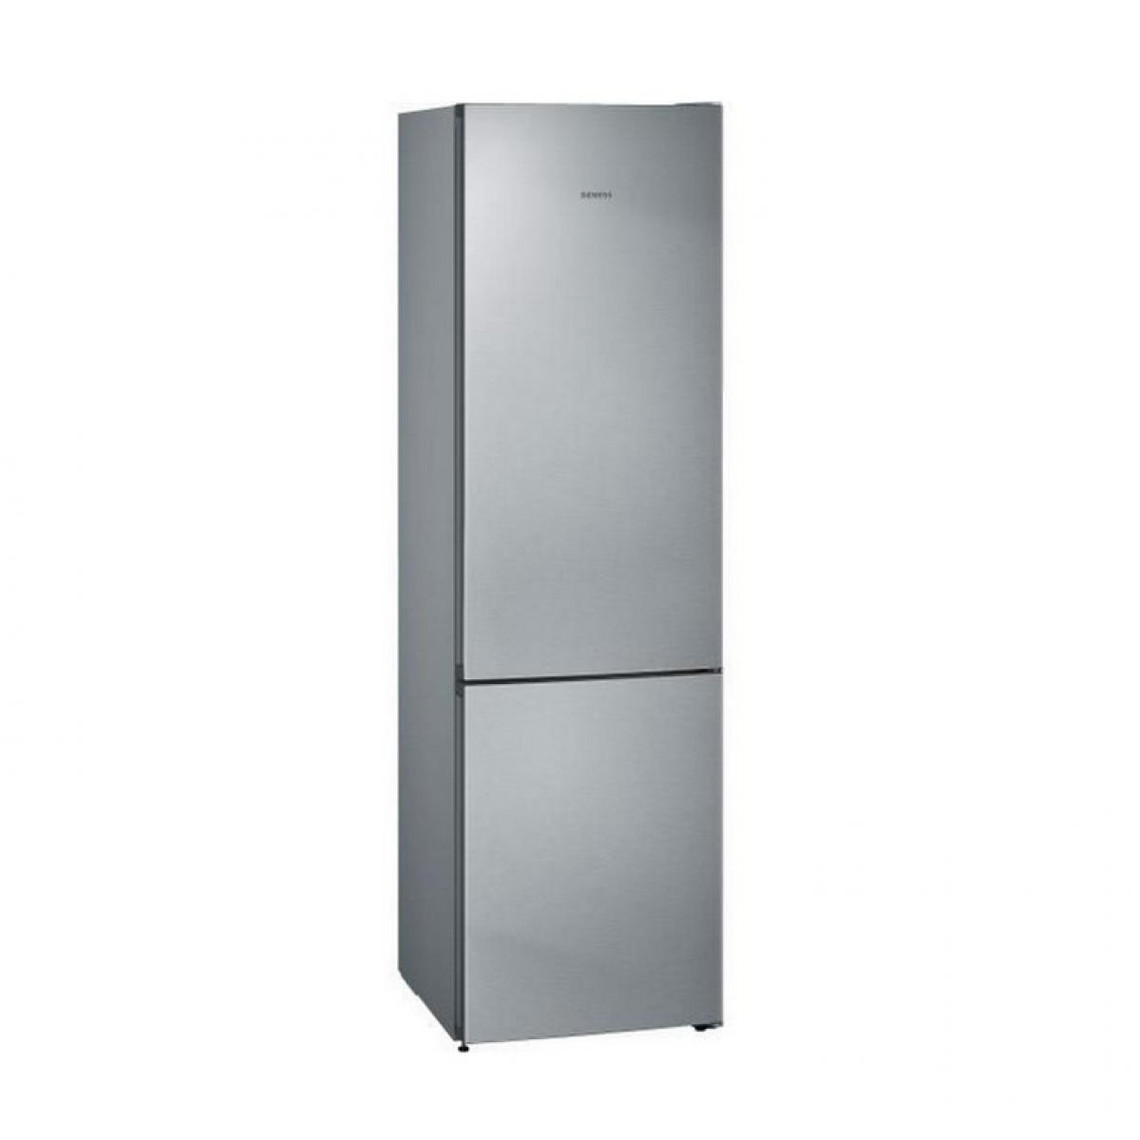 Réfrigérateur Siemens Réfrigérateur combiné 60cm 366l a++ nofrost inox - kg39nviec - SIEMENS